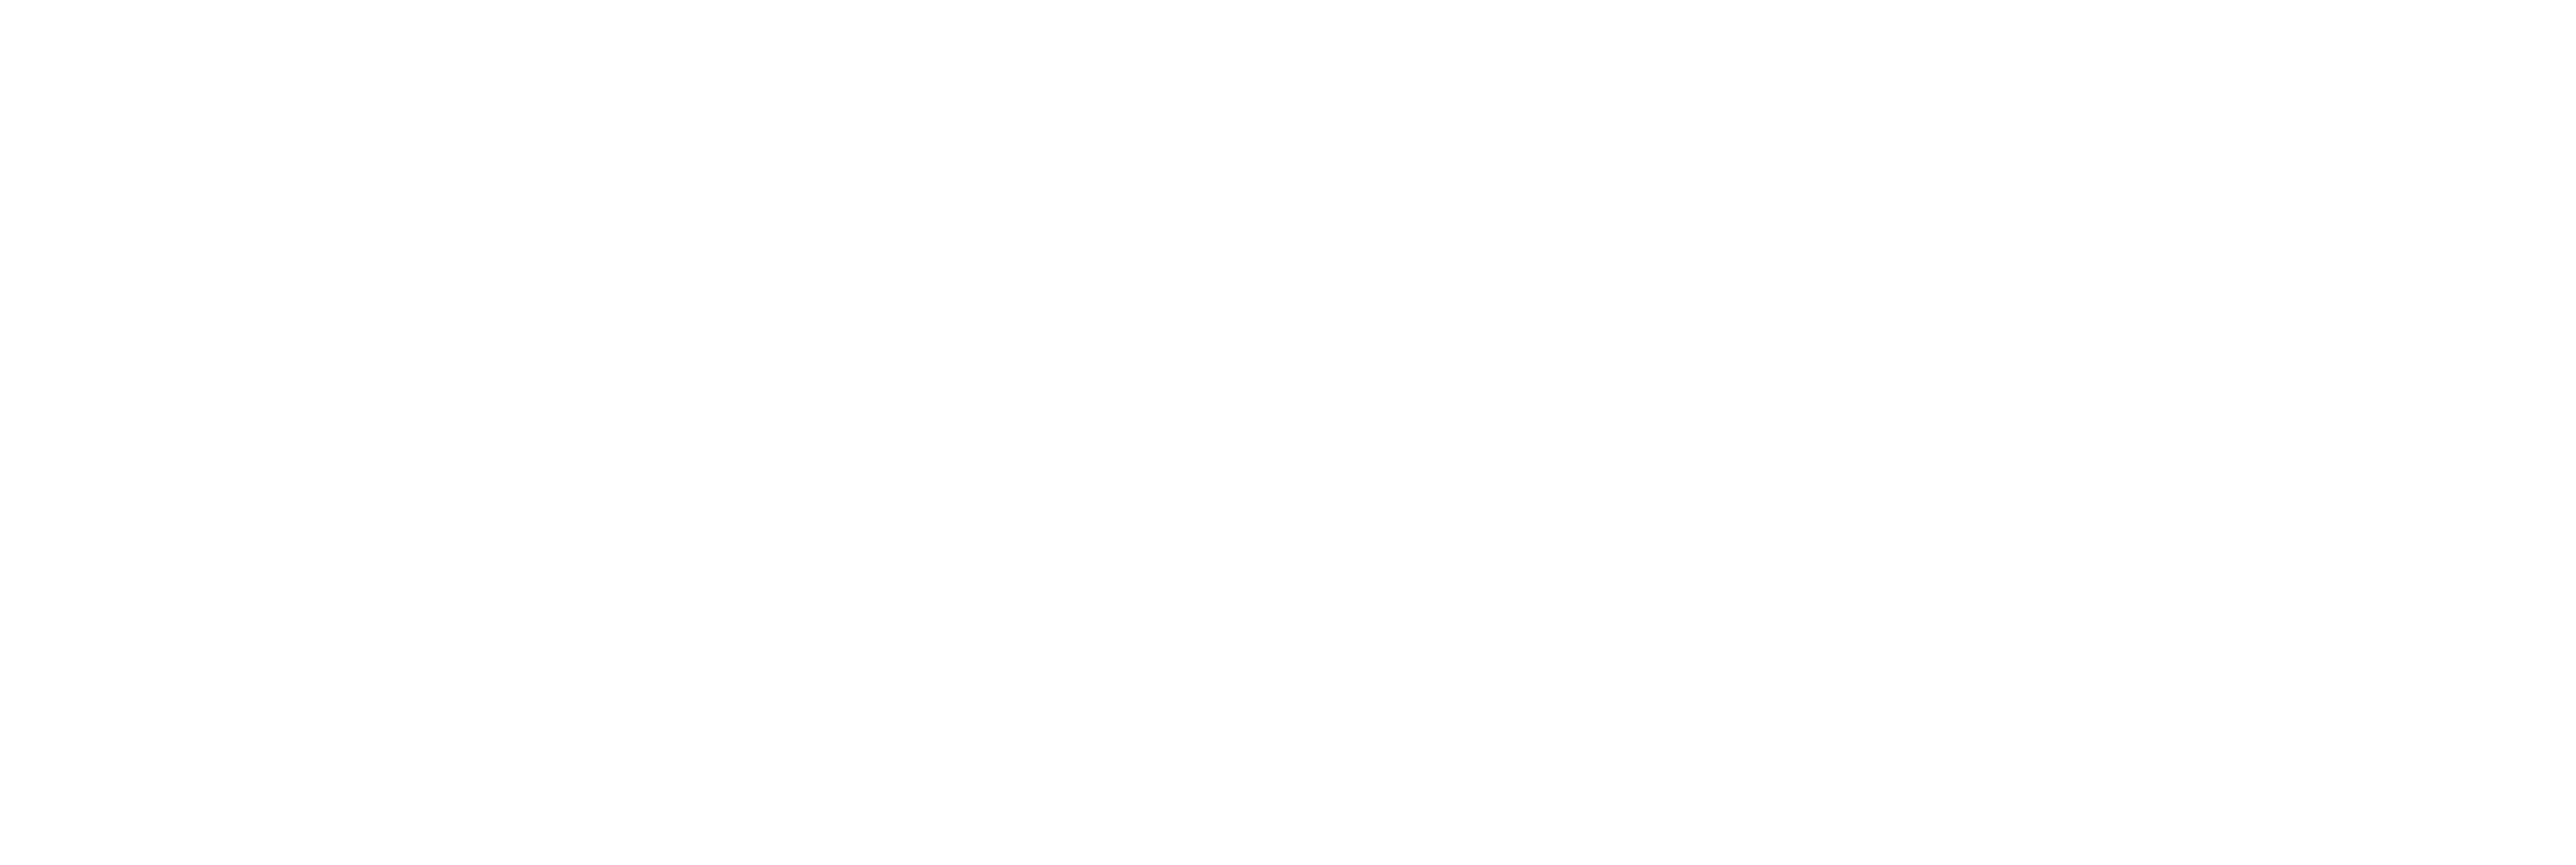 Ballyhoo Logo - Ballyhoo!. Ever 7 Management